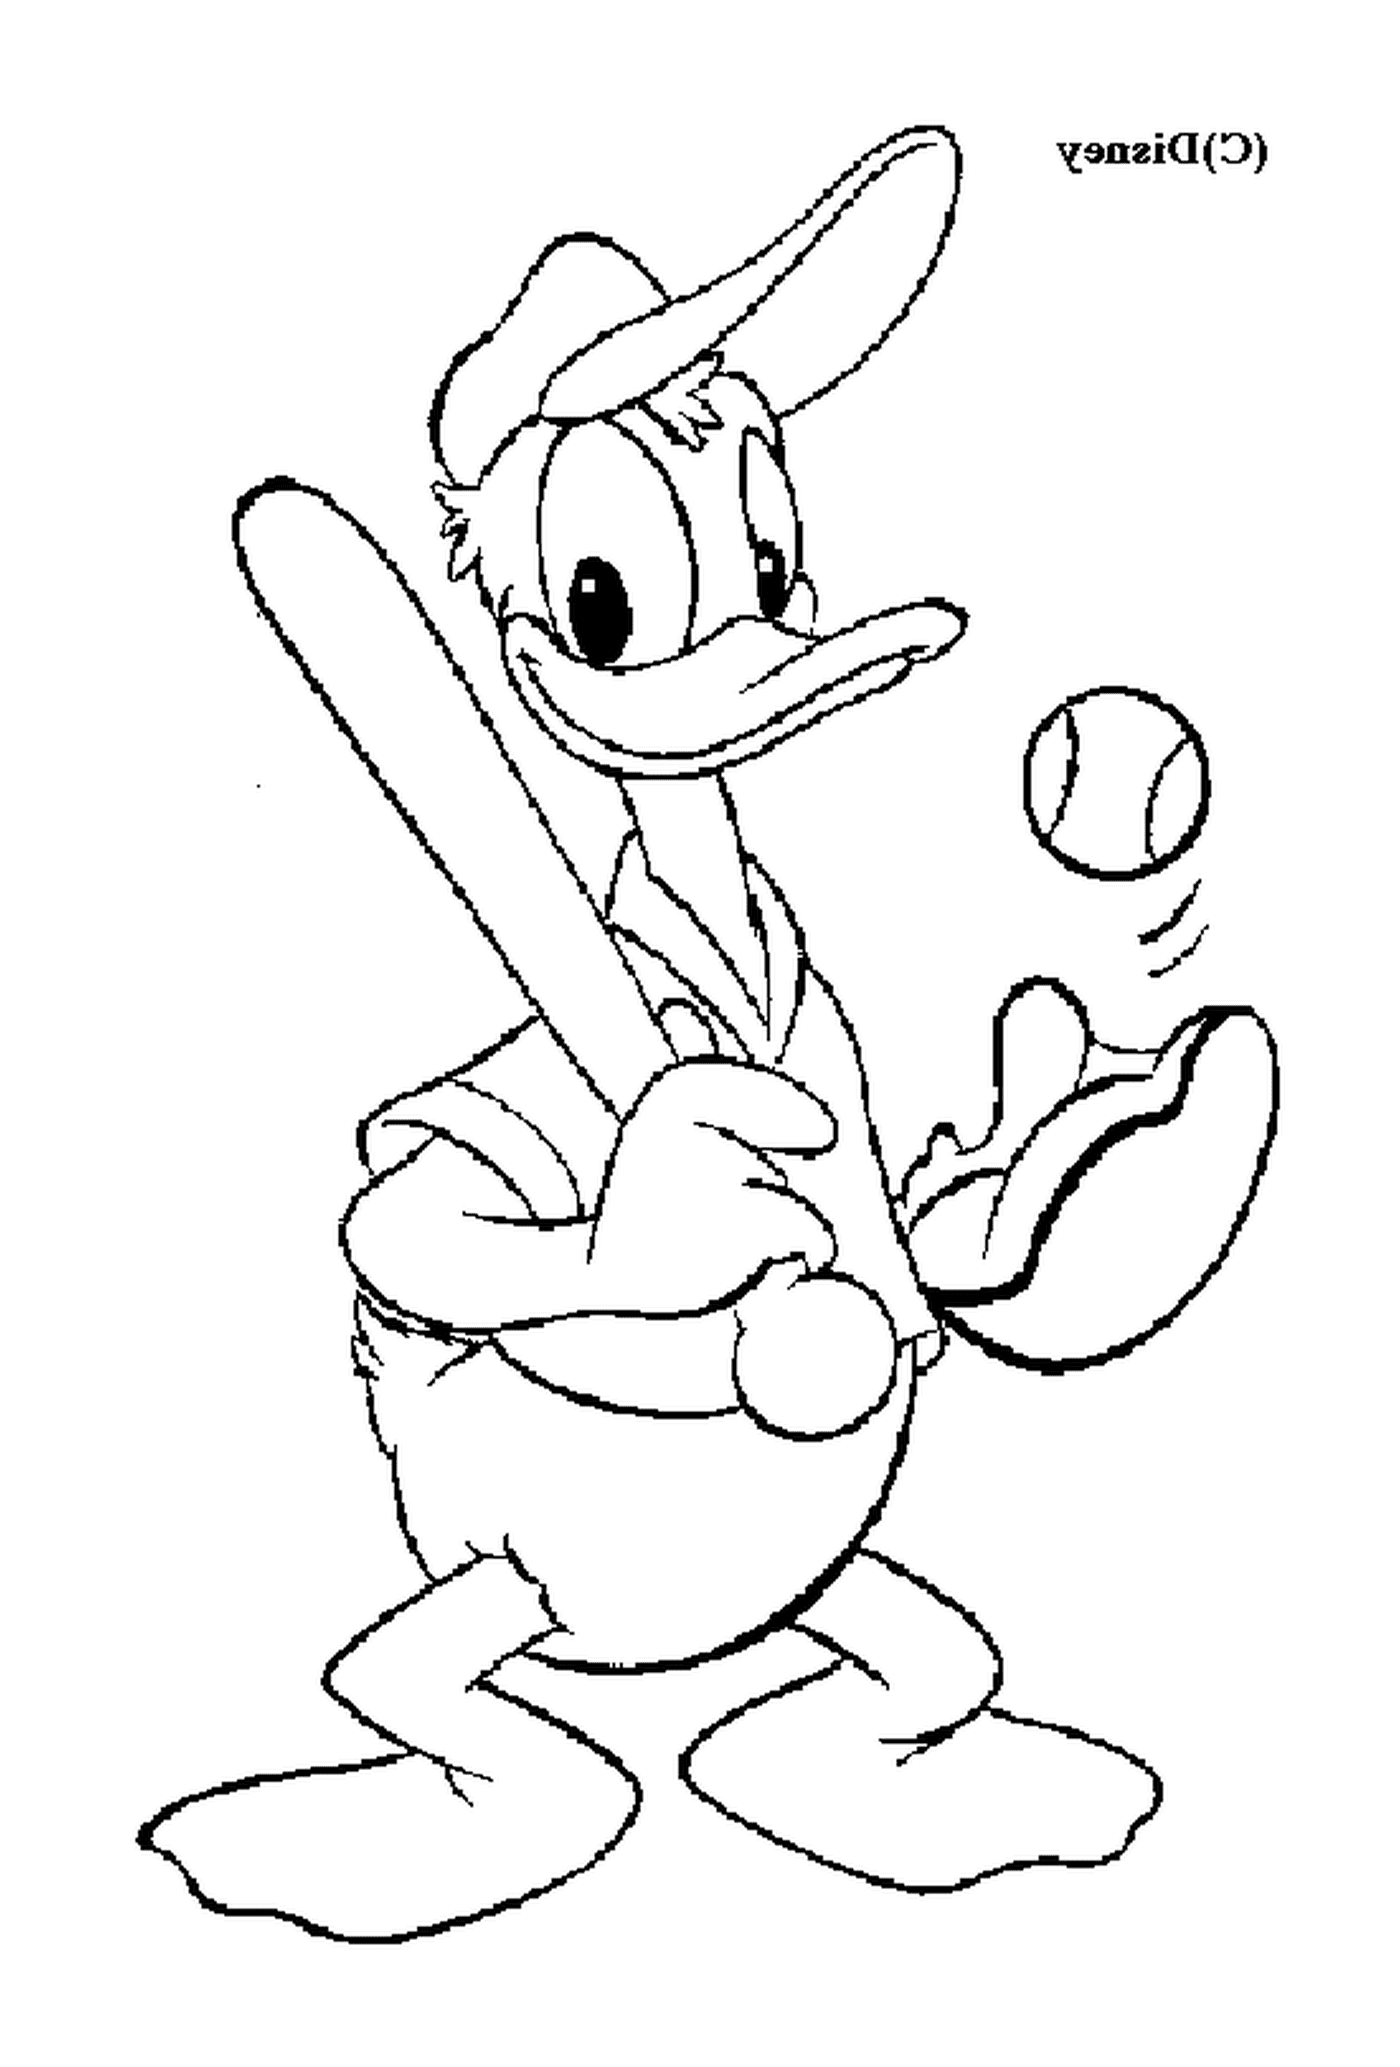   Donald joue au baseball avec ardeur 